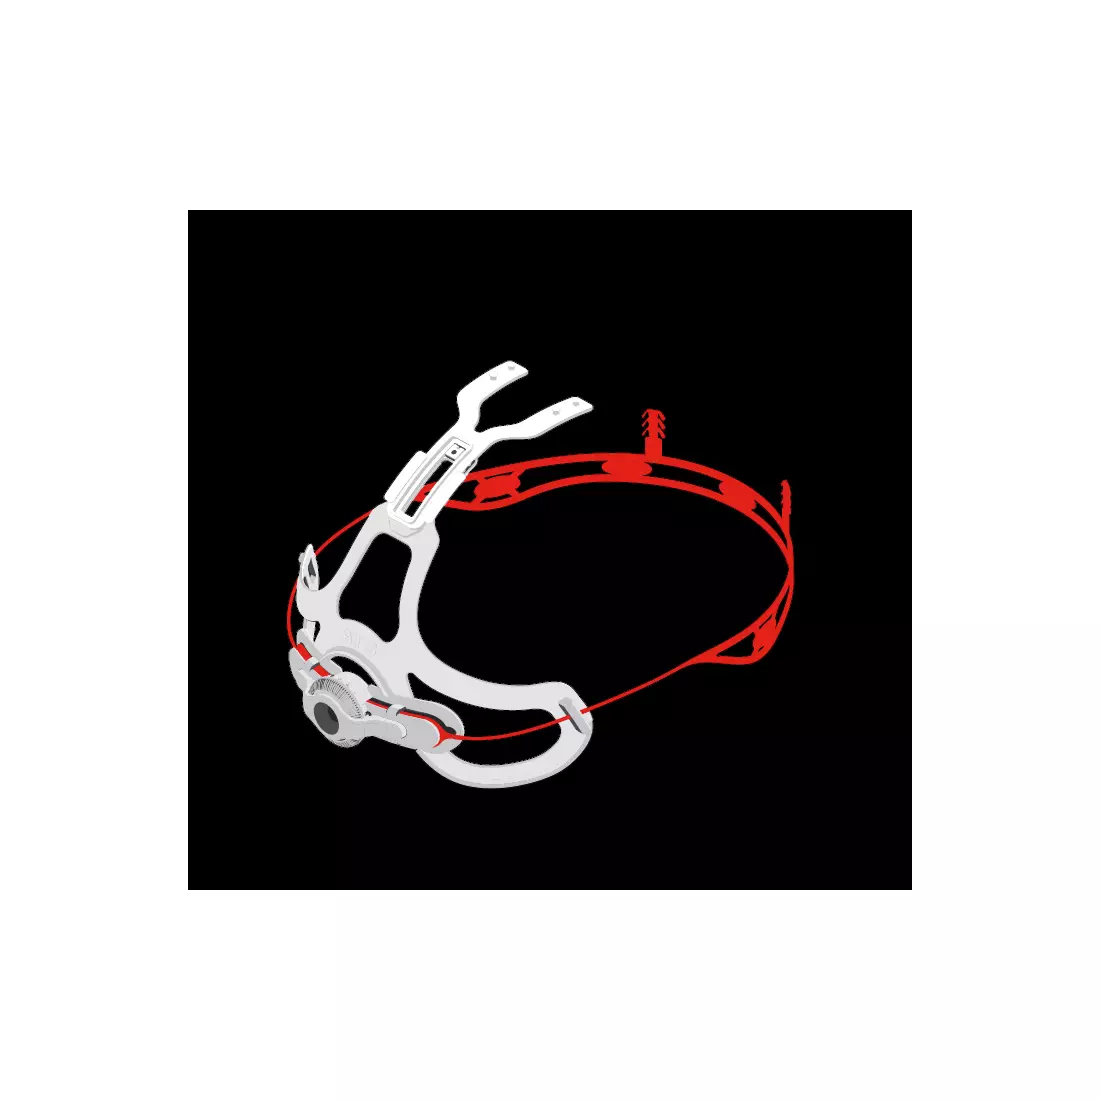 MTB cyklistická helma LAZER - CYCLONE, barva: červená